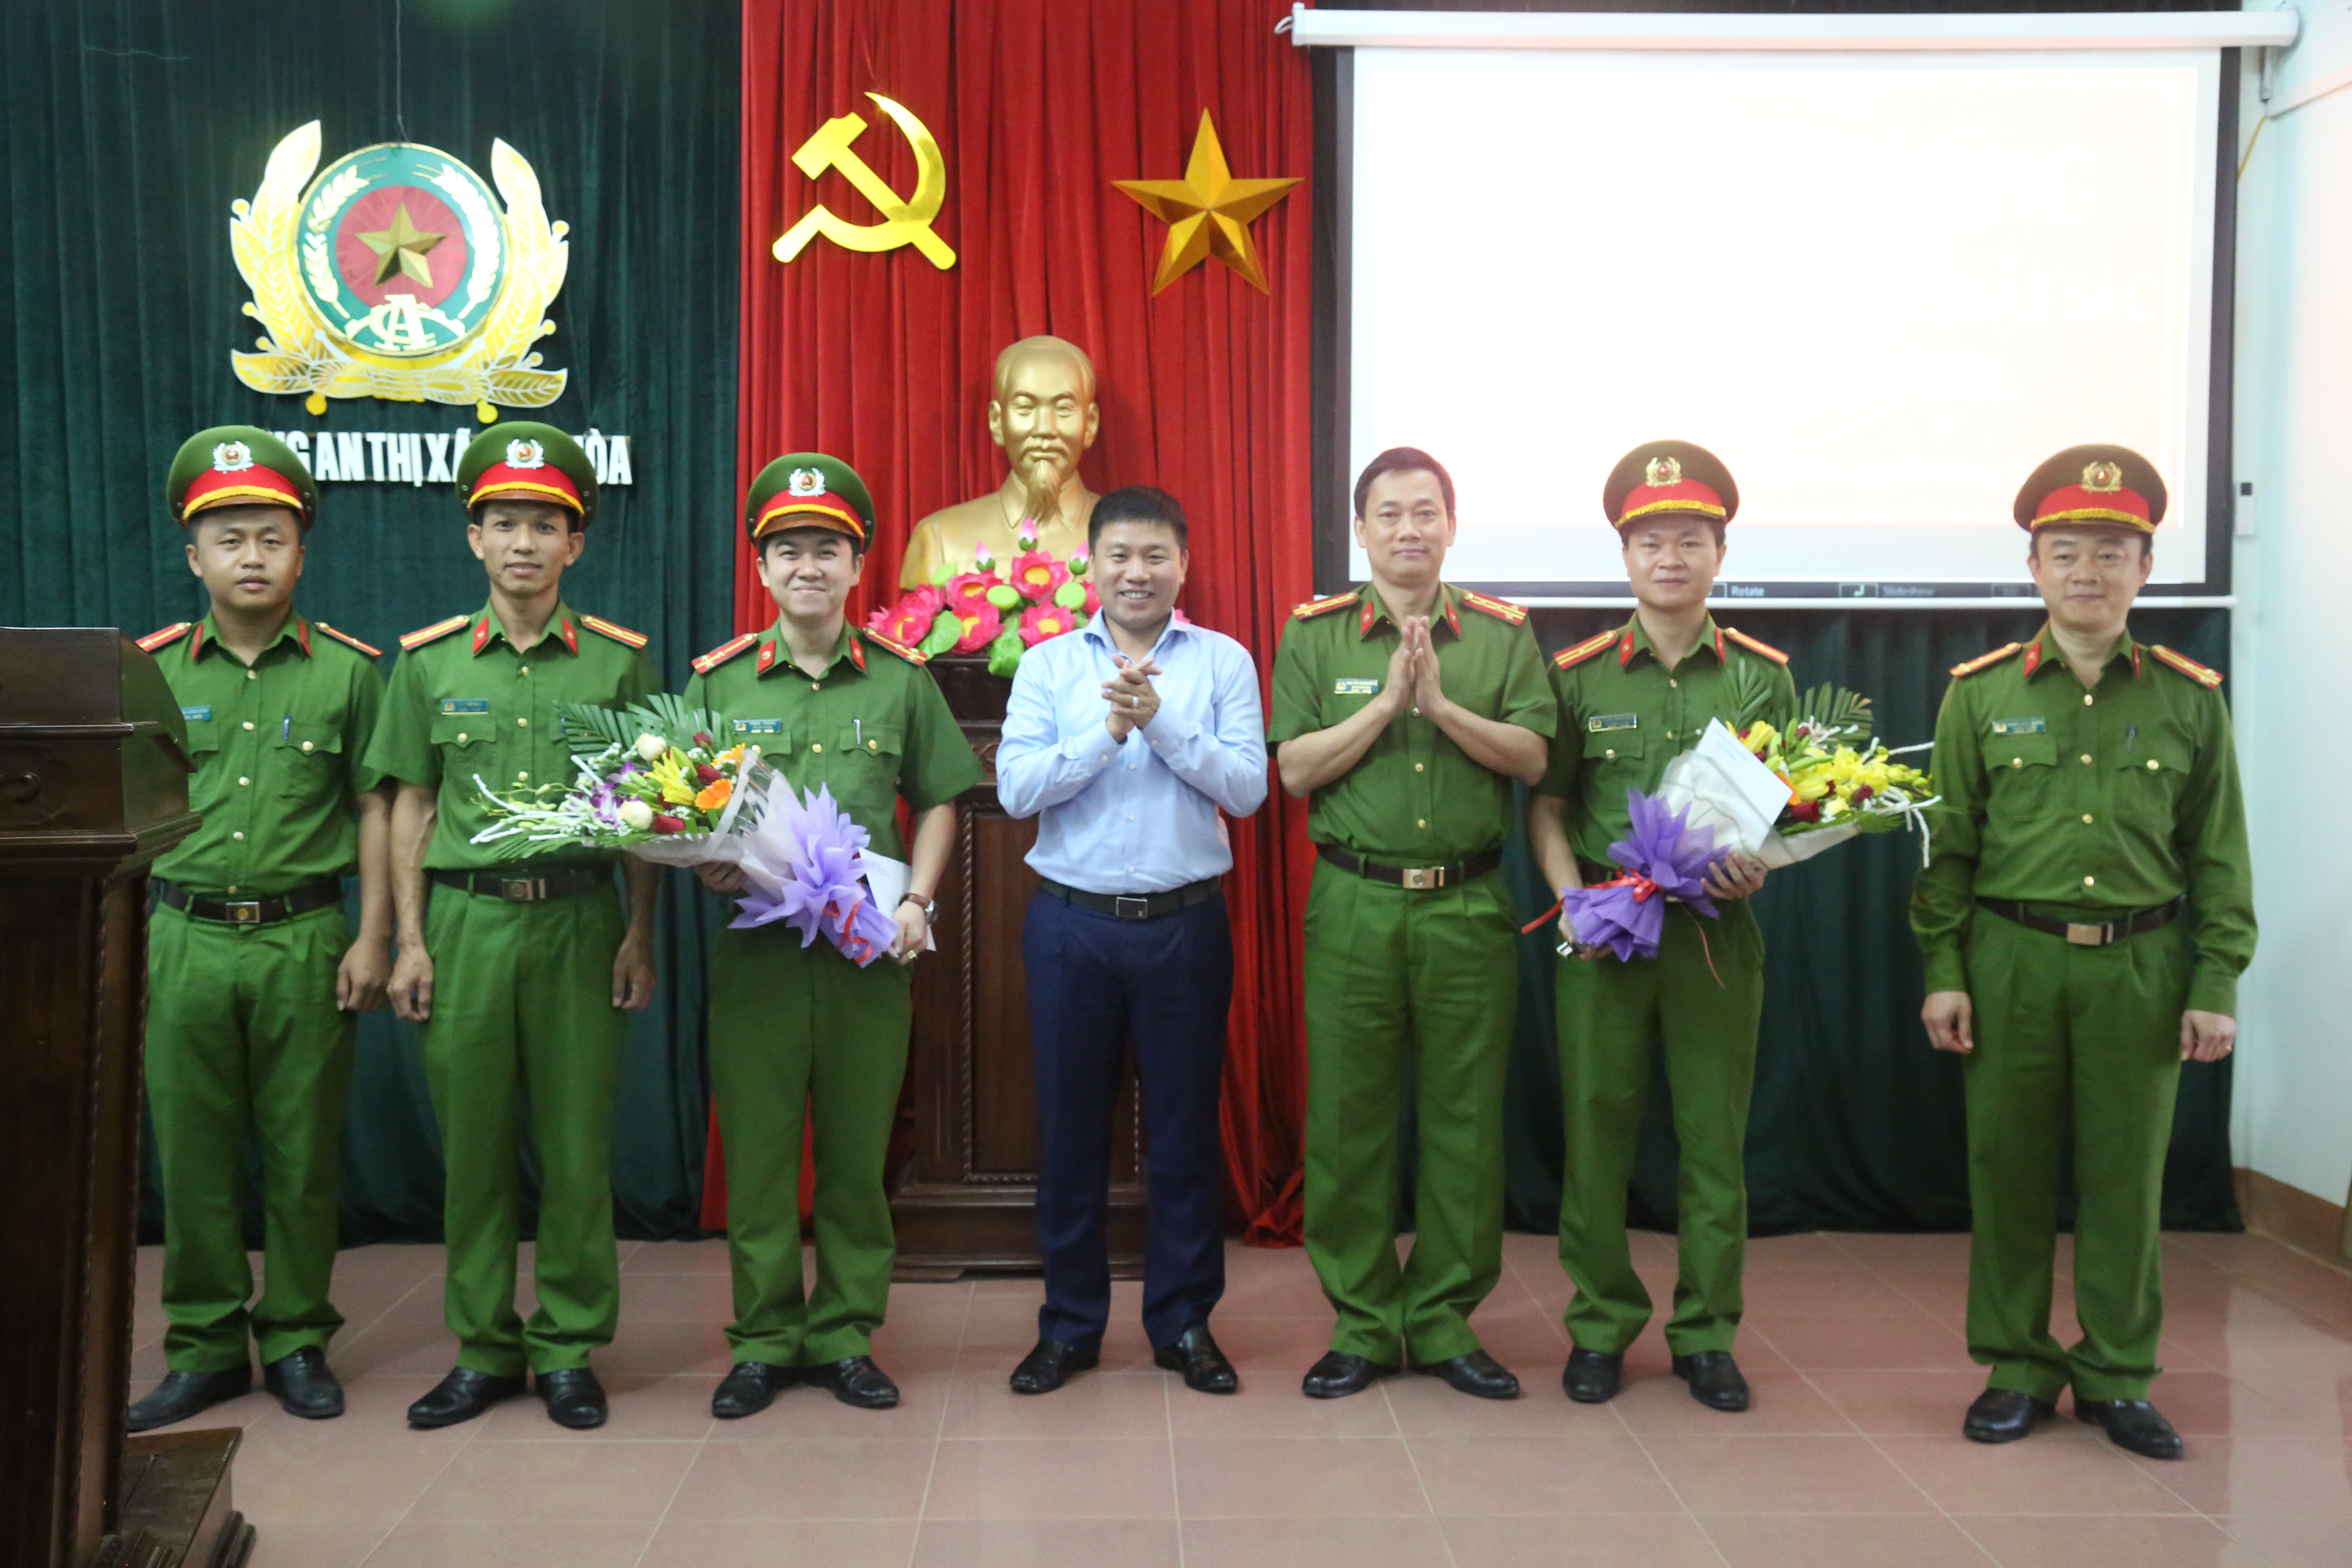 Lãnh đạo Công an tỉnh, UBND thị xã Thái Hòa tặng hoa, trao thưởng về thành tích đặc biệt xuất sắc của CA thị xã Thái Hòa. Ảnh: Vũ Bắc